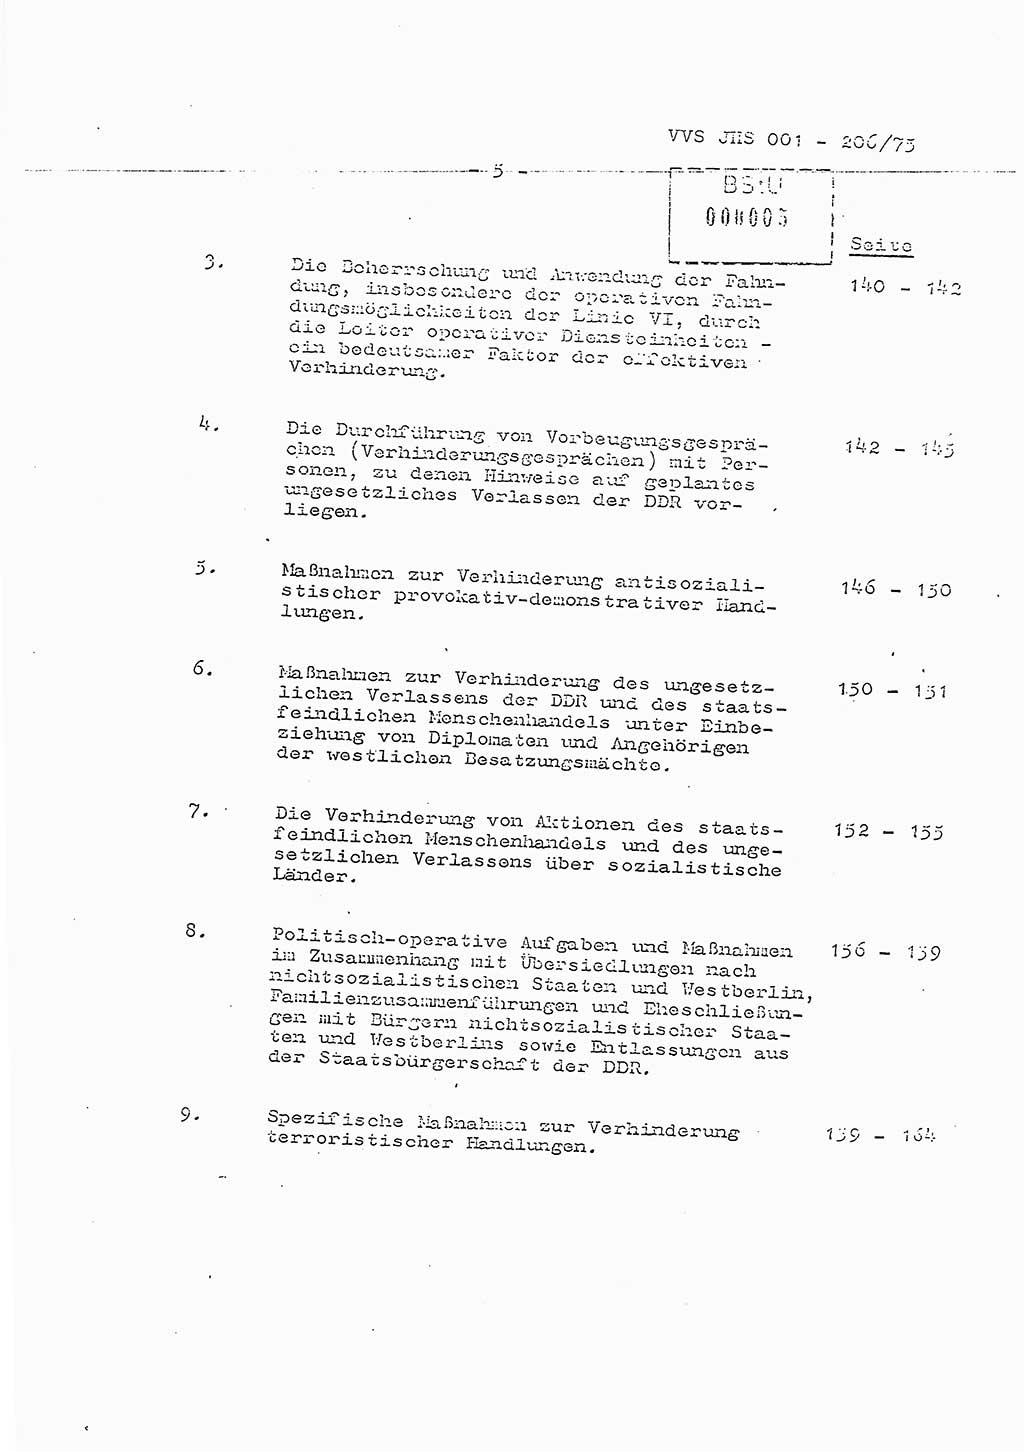 Dissertation Generalmajor Manfred Hummitzsch (Leiter der BV Leipzig), Generalmajor Heinz Fiedler (HA Ⅵ), Oberst Rolf Fister (HA Ⅸ), Ministerium für Staatssicherheit (MfS) [Deutsche Demokratische Republik (DDR)], Juristische Hochschule (JHS), Vertrauliche Verschlußsache (VVS) 001-206/75, Potsdam 1975, Seite 5 (Diss. MfS DDR JHS VVS 001-206/75 1975, S. 5)